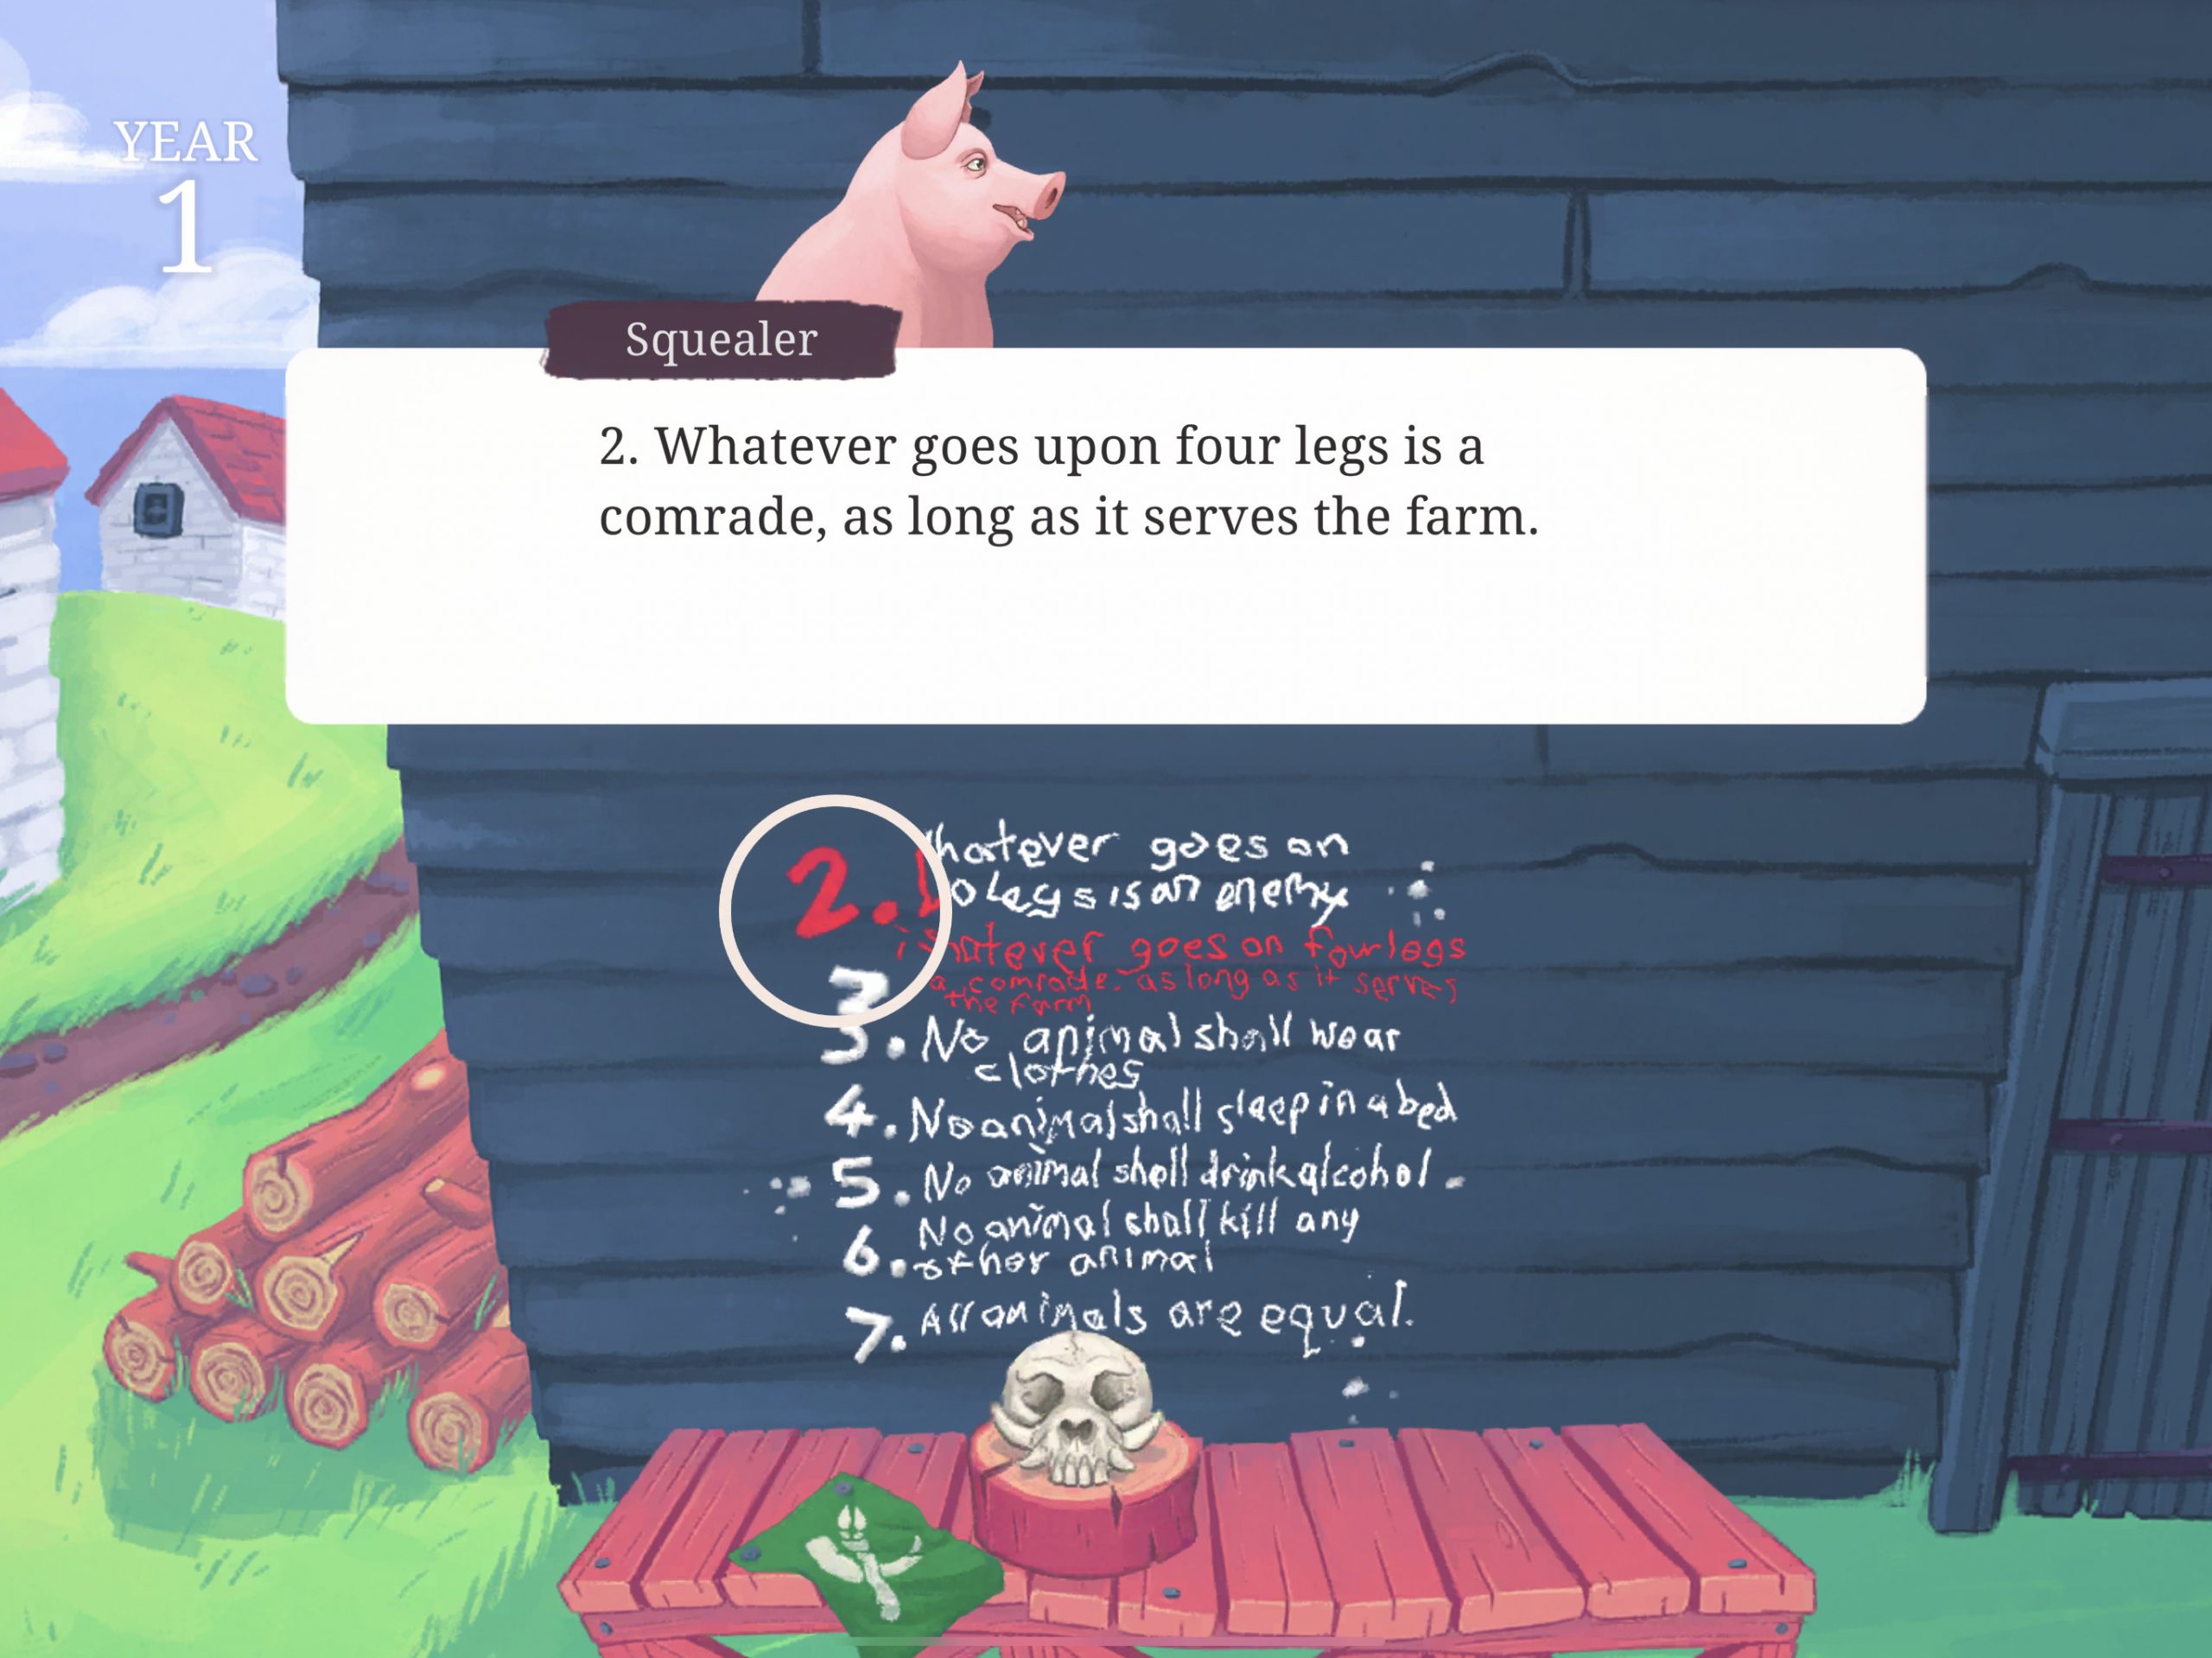 Skjermbilde fra spillet Animal Farm.